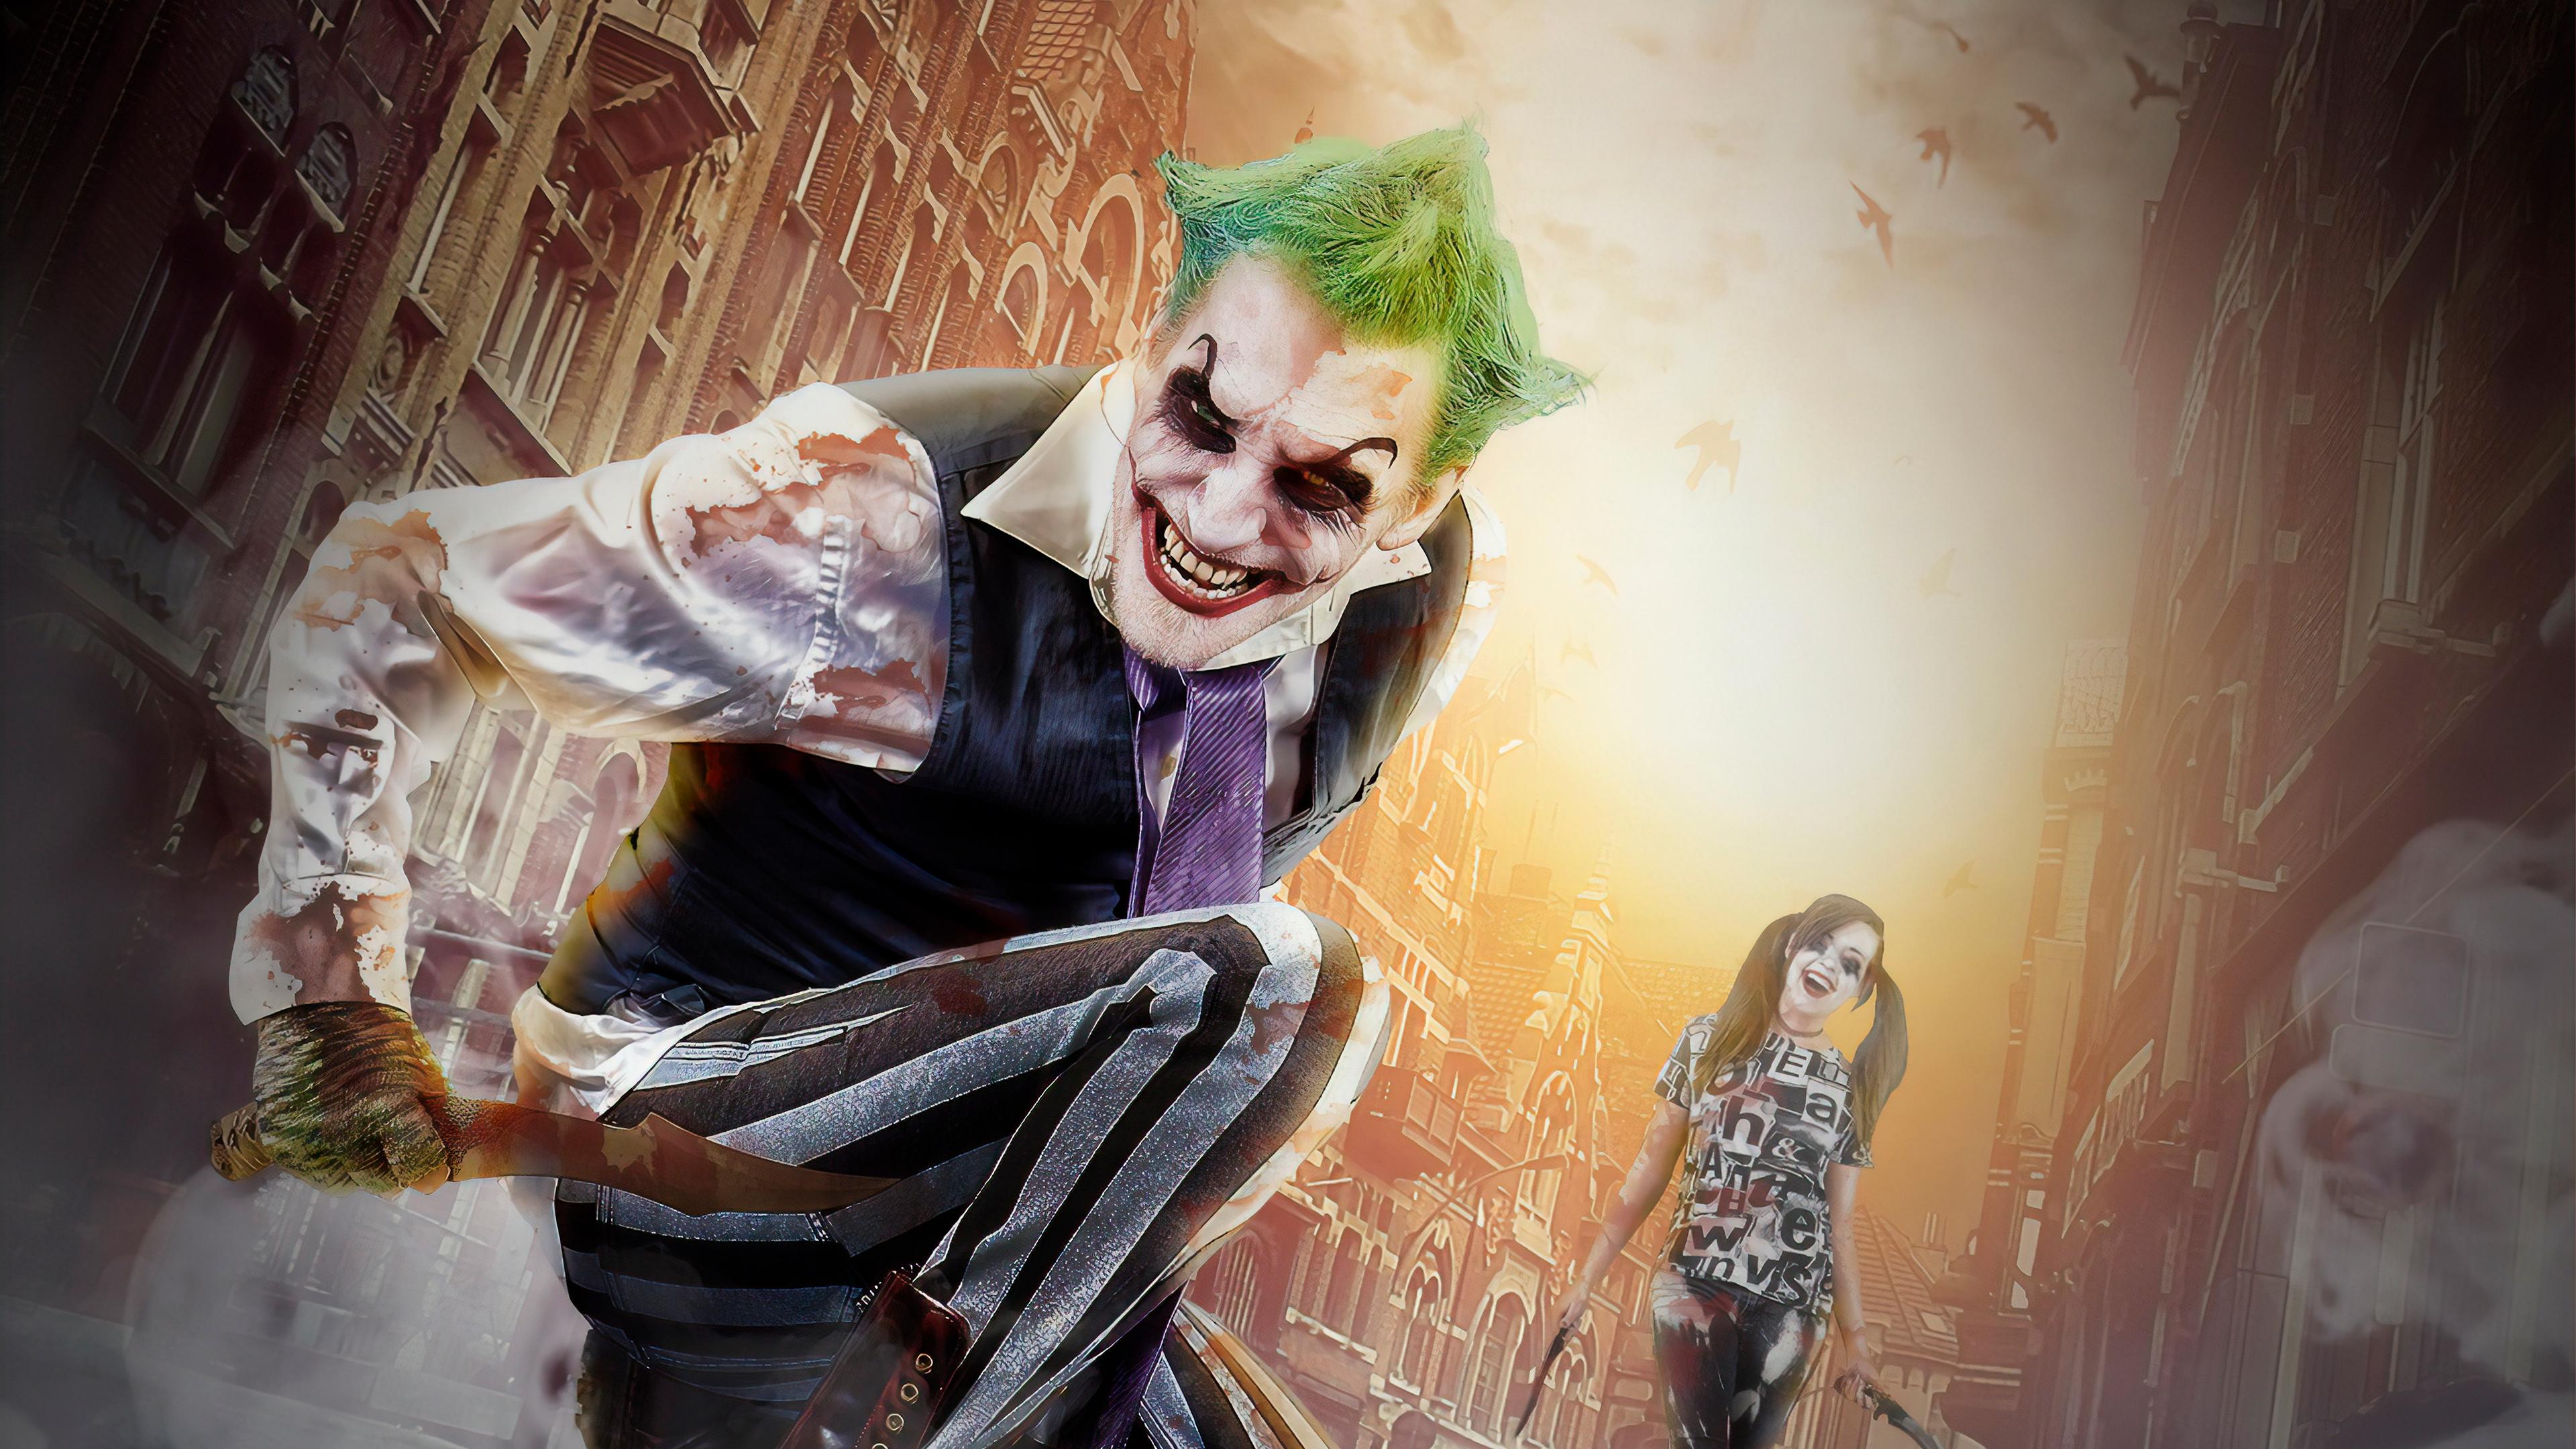 3840 x 2160 · jpeg - Joker And Harley Cosplay Digital Art 4k, HD Superheroes, 4k Wallpapers ...